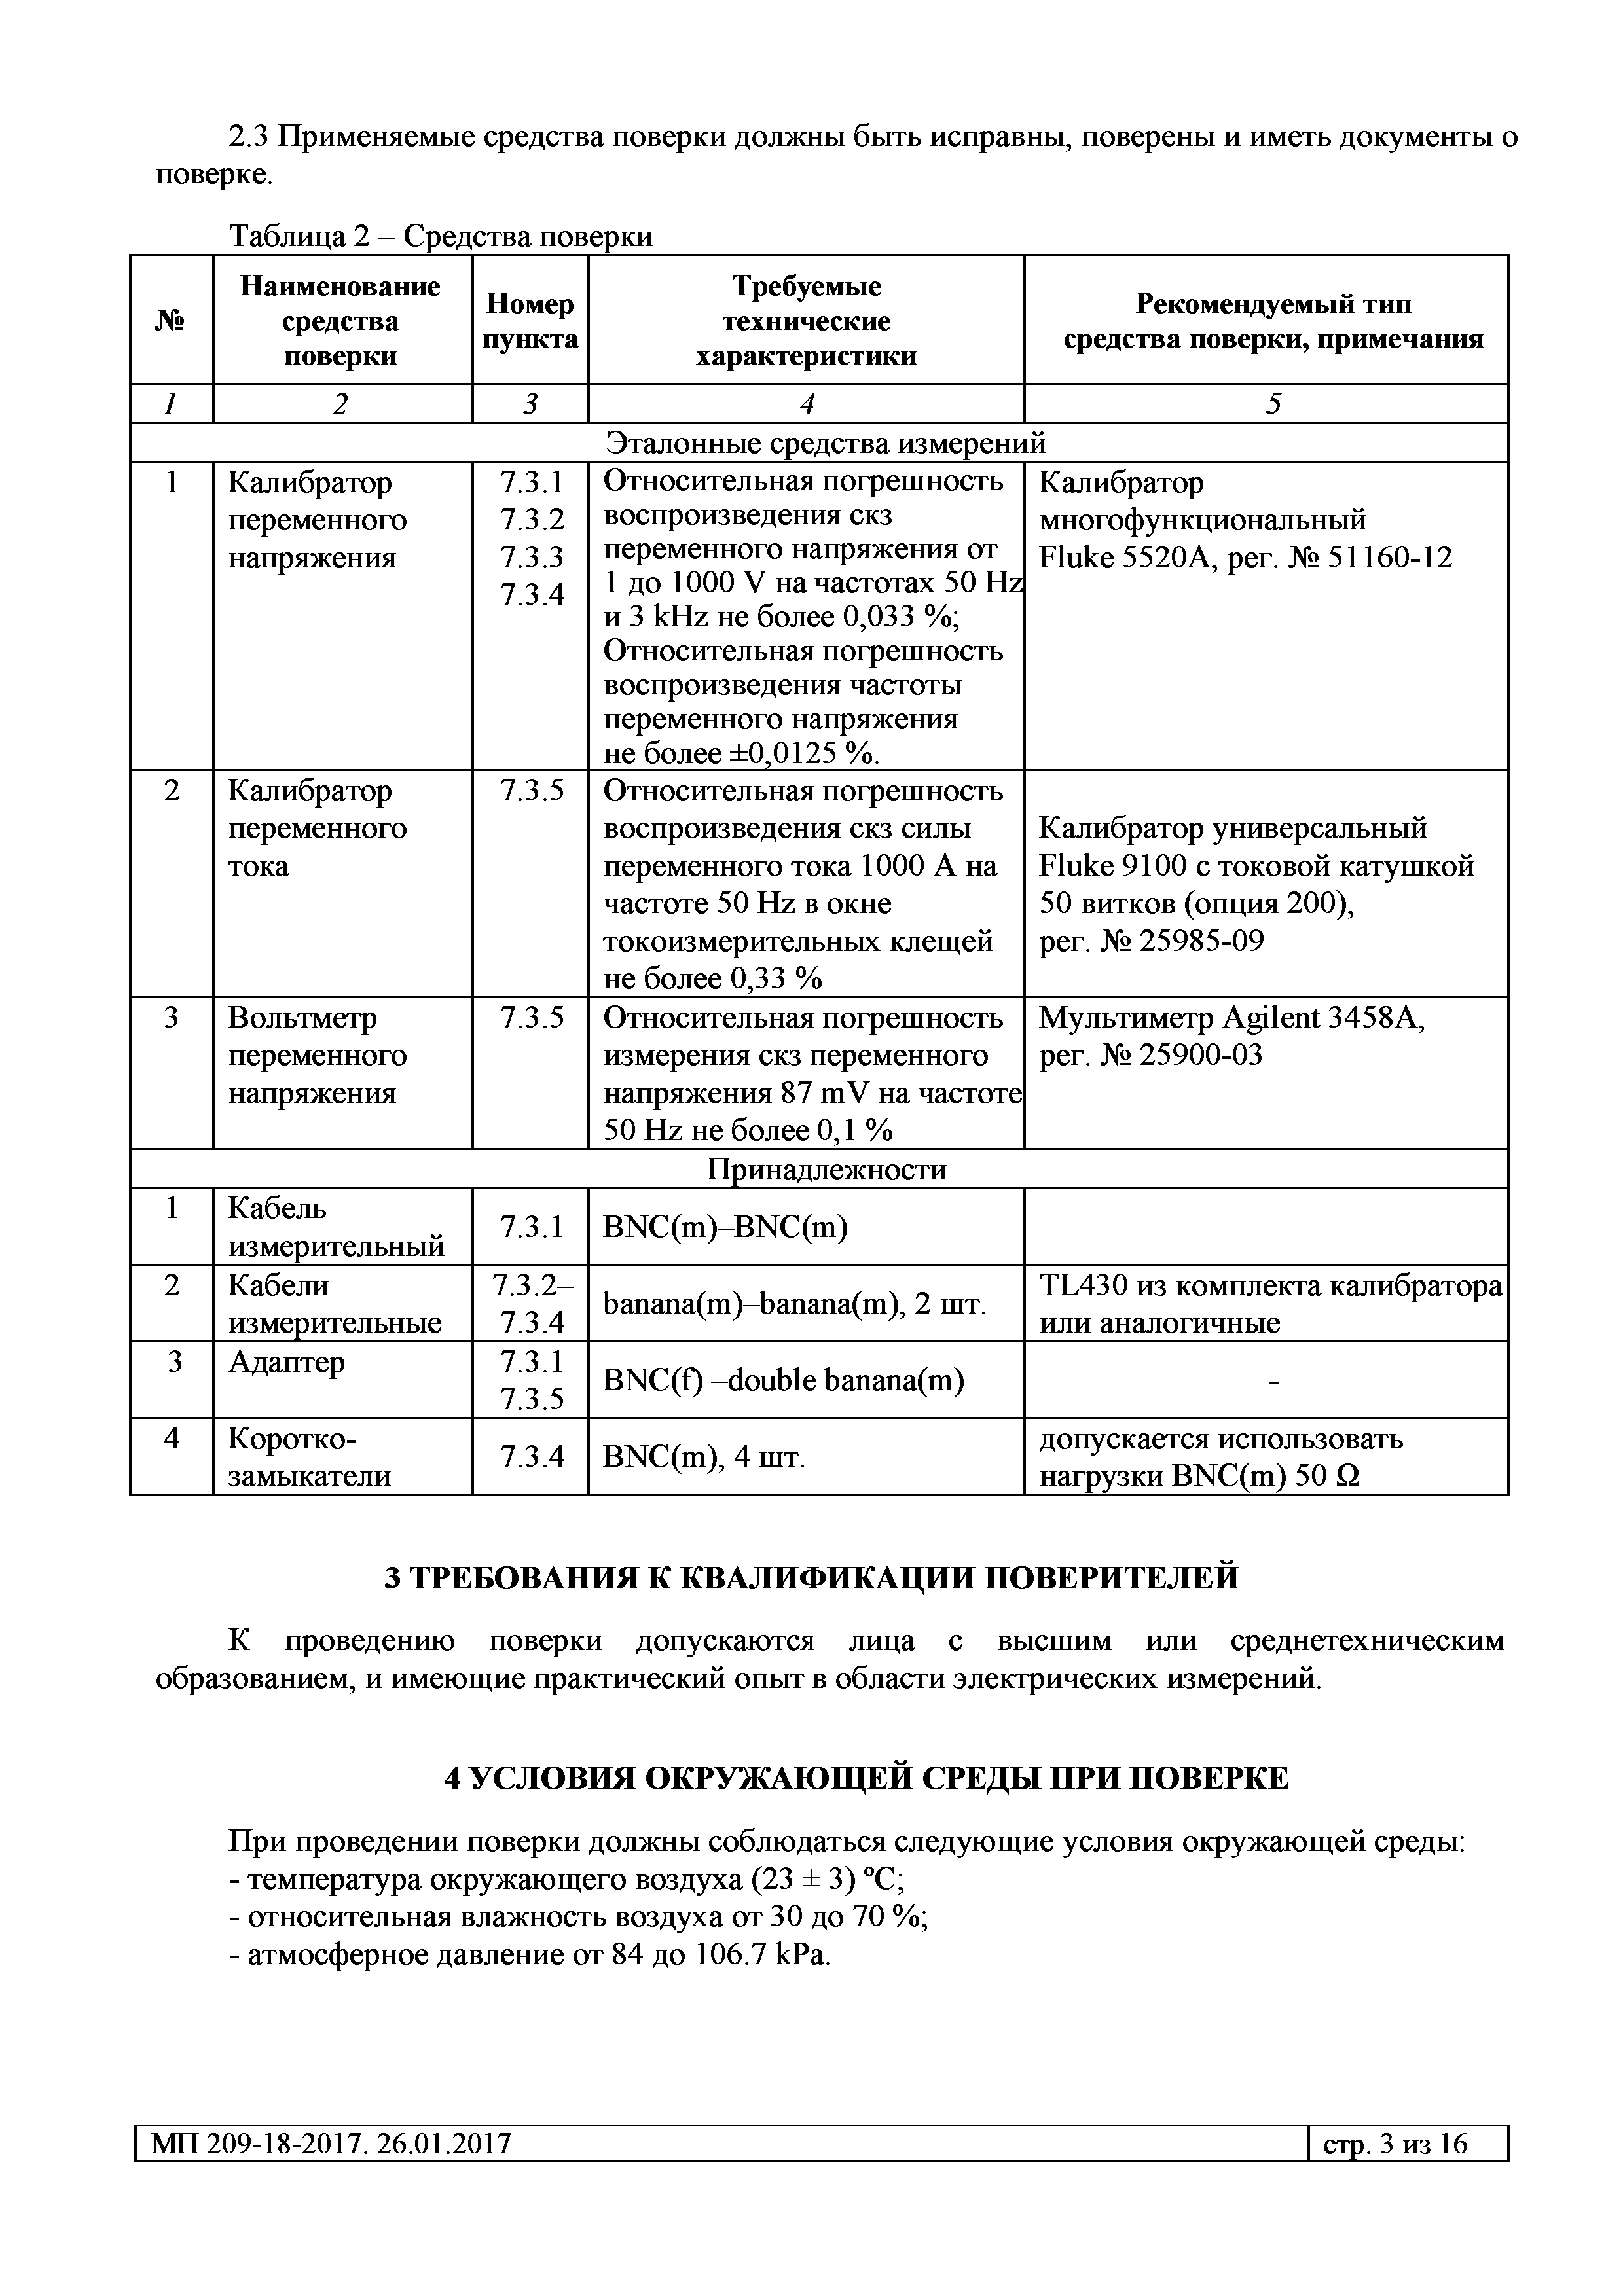 МП 209-18-2017